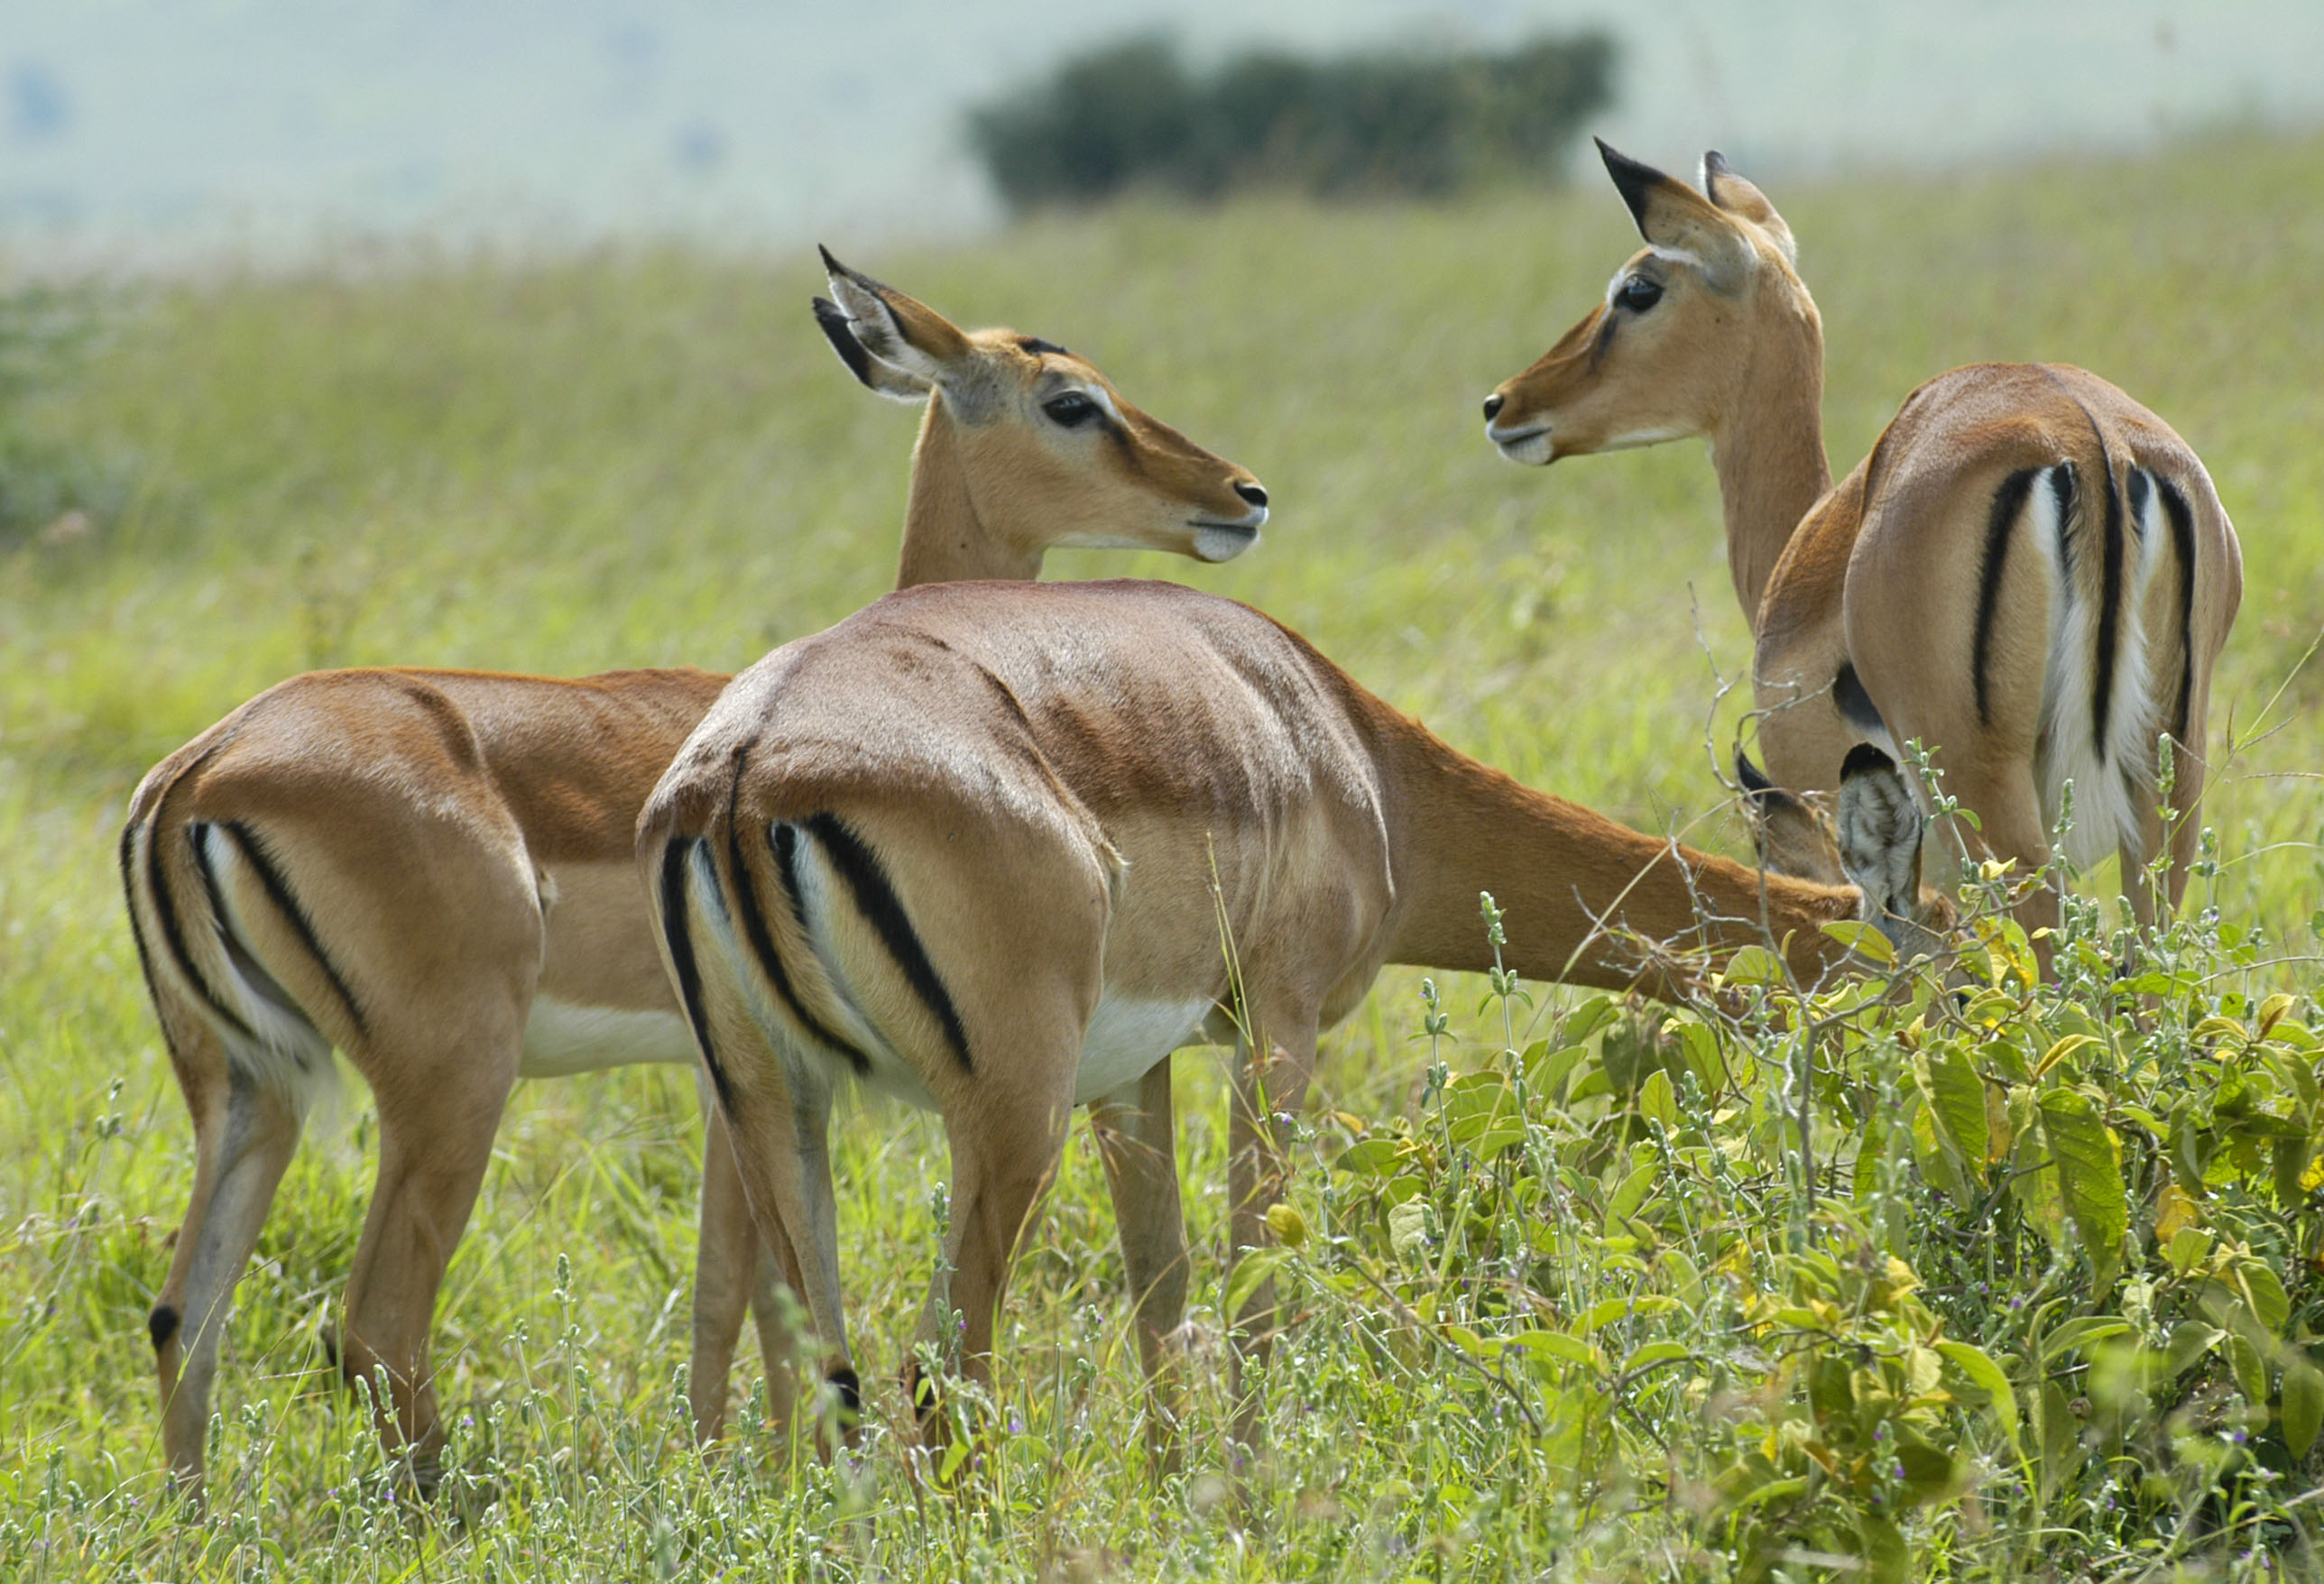  Kenya Safari